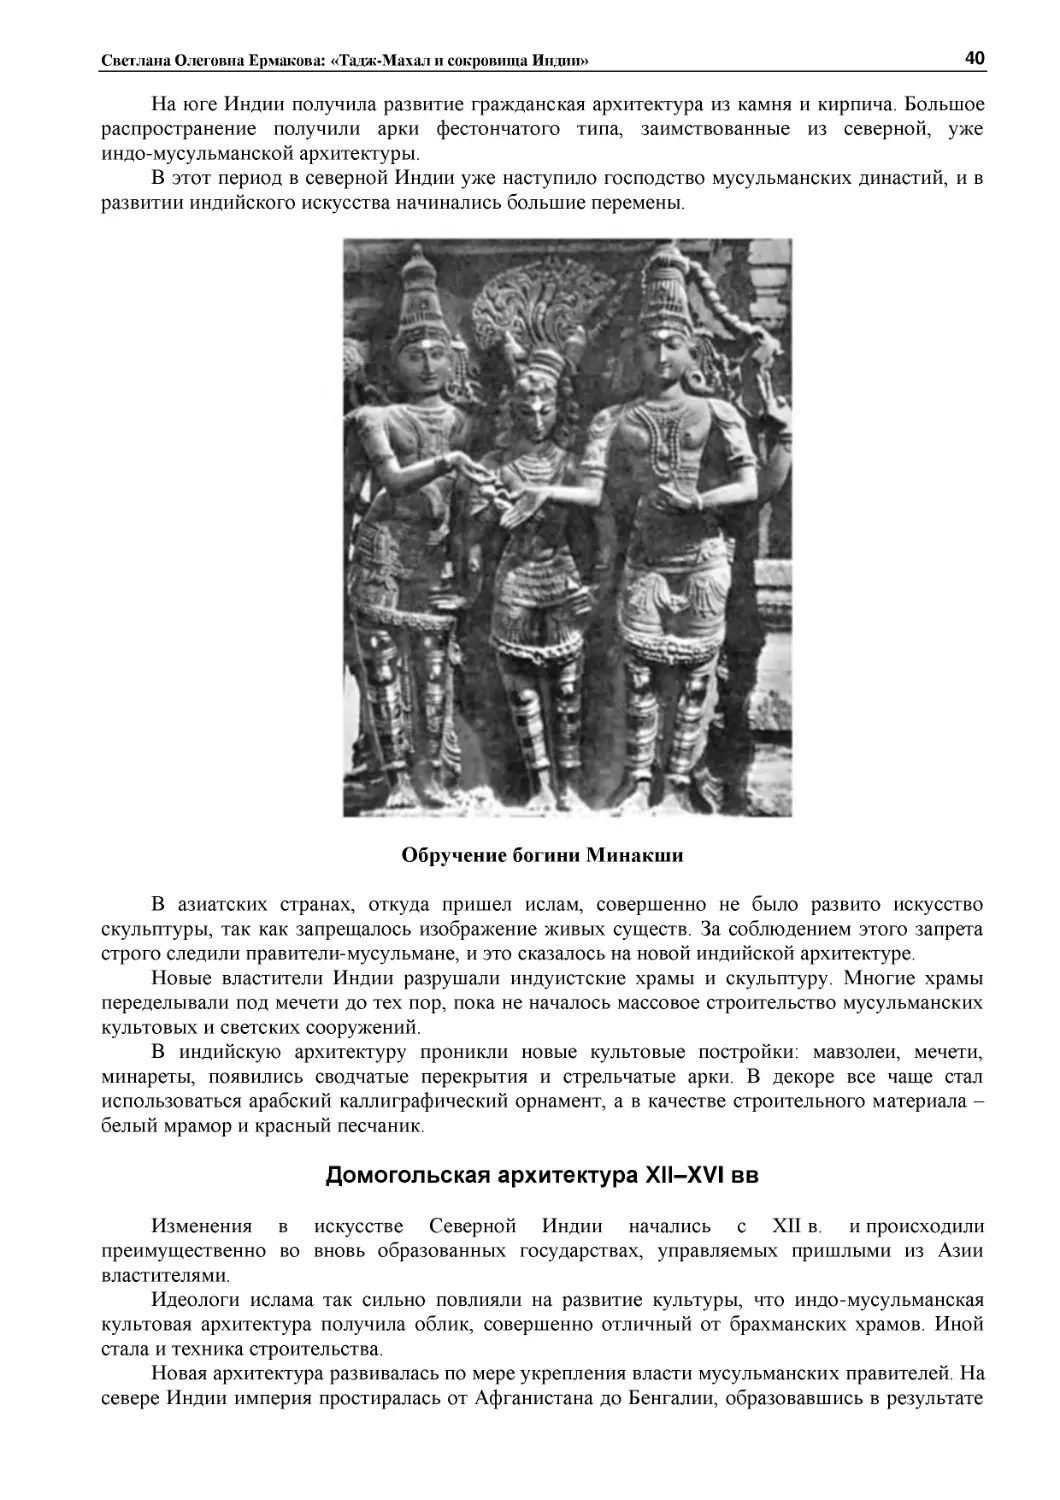 ﻿Обручение богини Минакш
﻿Домогольская архитектура XII–XVI в